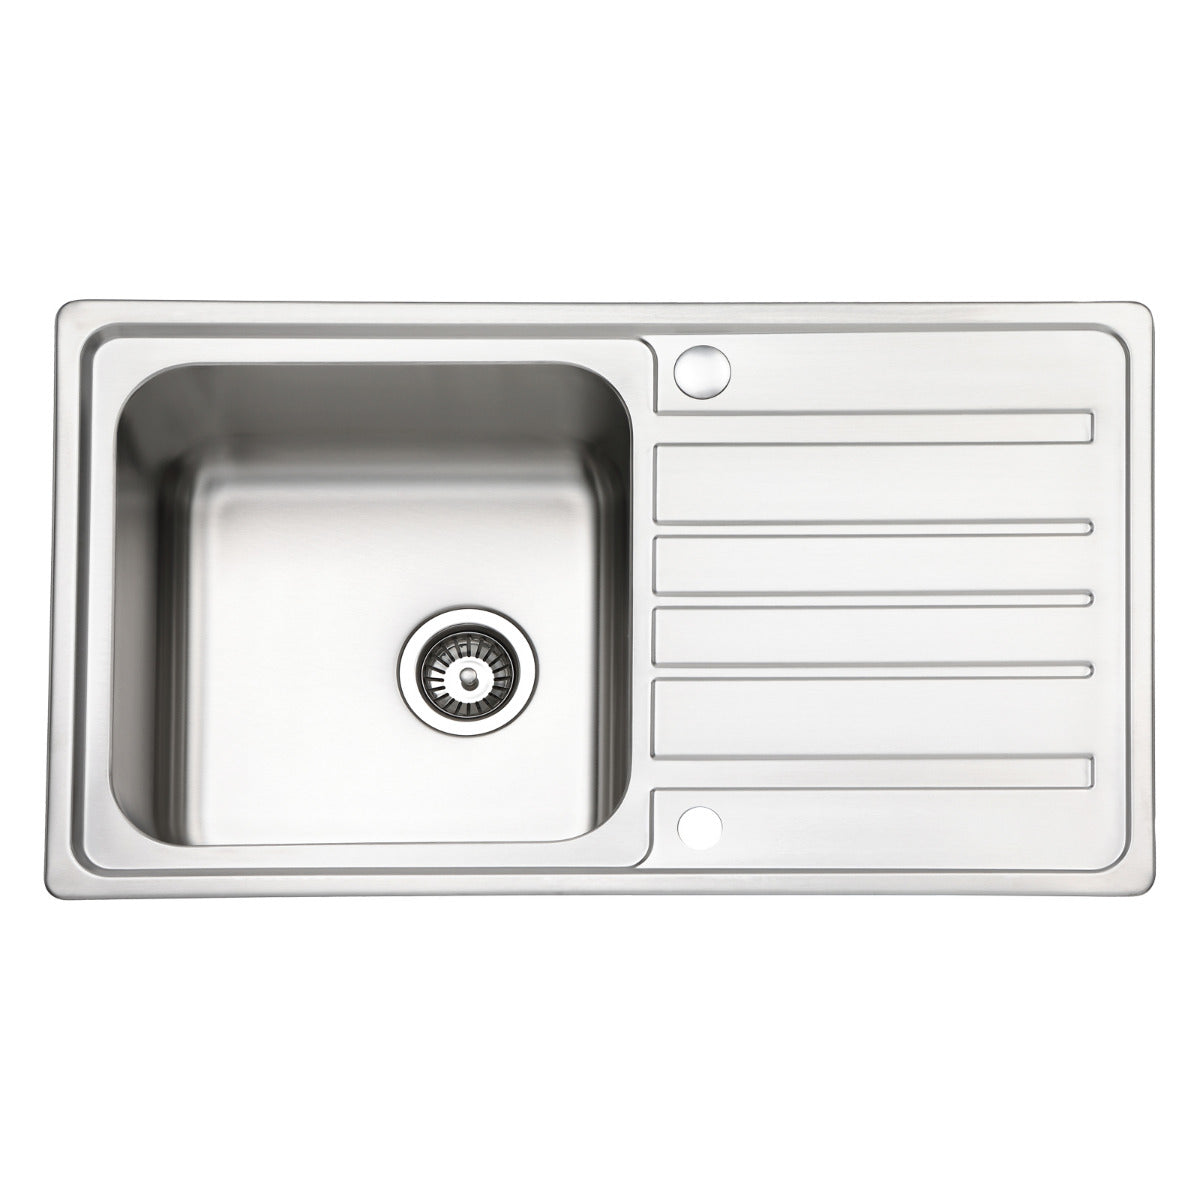 JassferryJASSFERRY Stainless Steel Kitchen Sink Inset Single 1 Bowl 860 x 500 mm Reversible Drainer - 802Kitchen Sinks